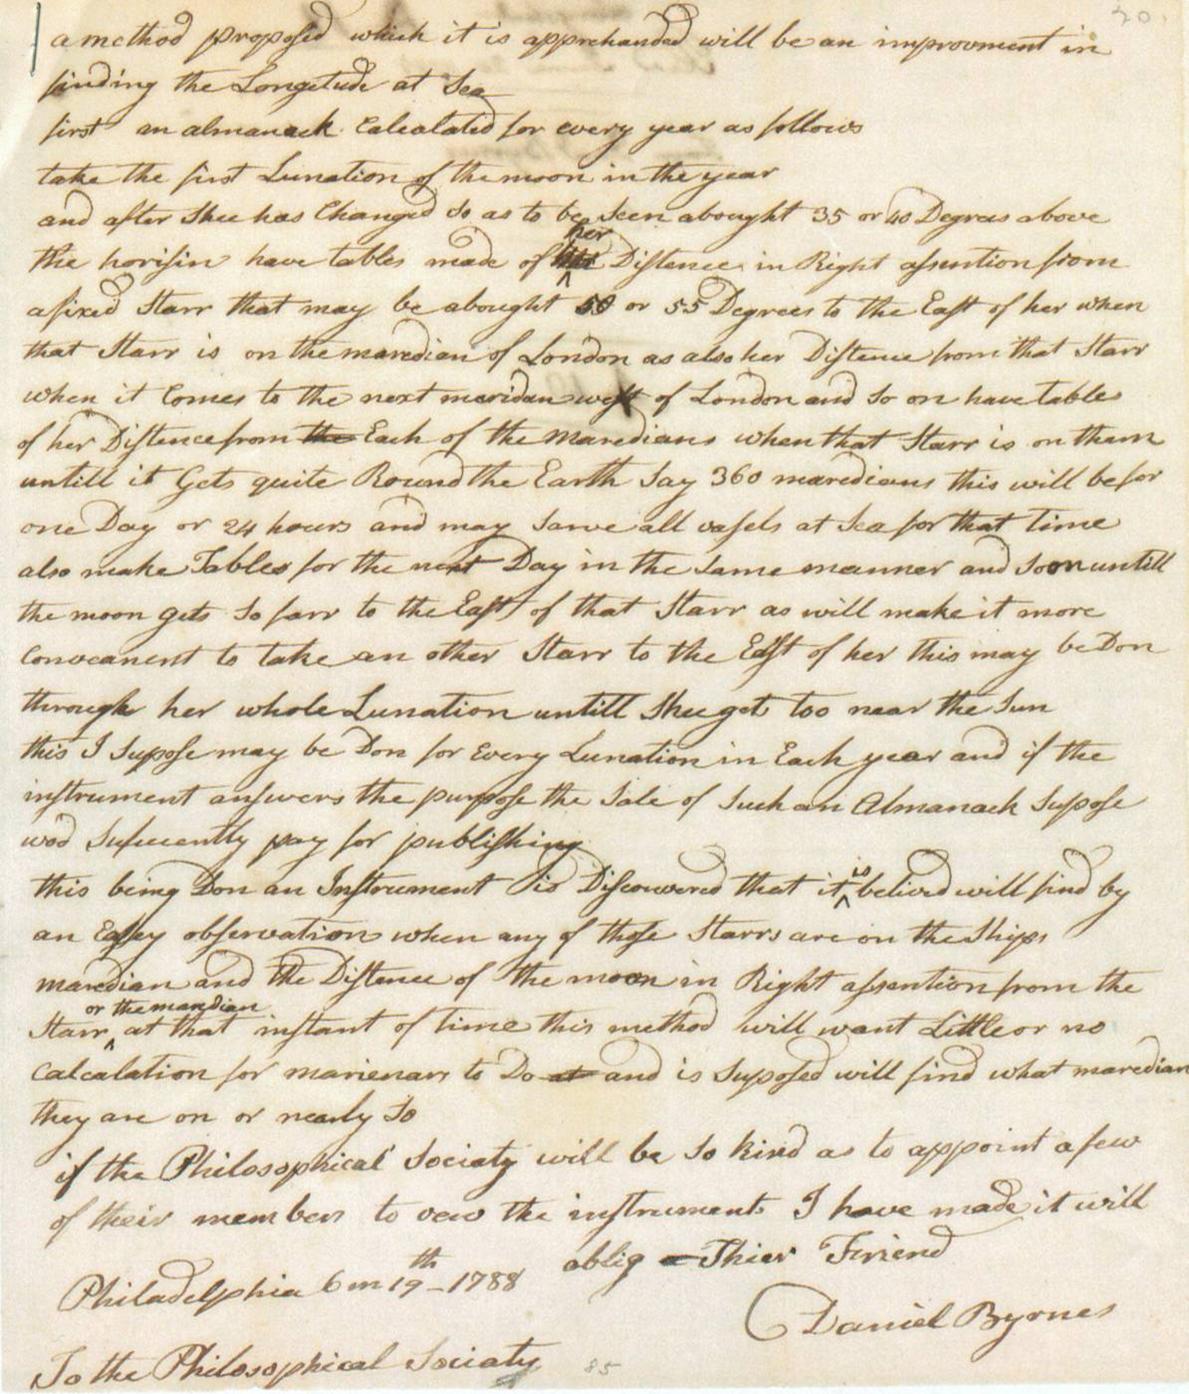 Byrnes to Franklin Letter